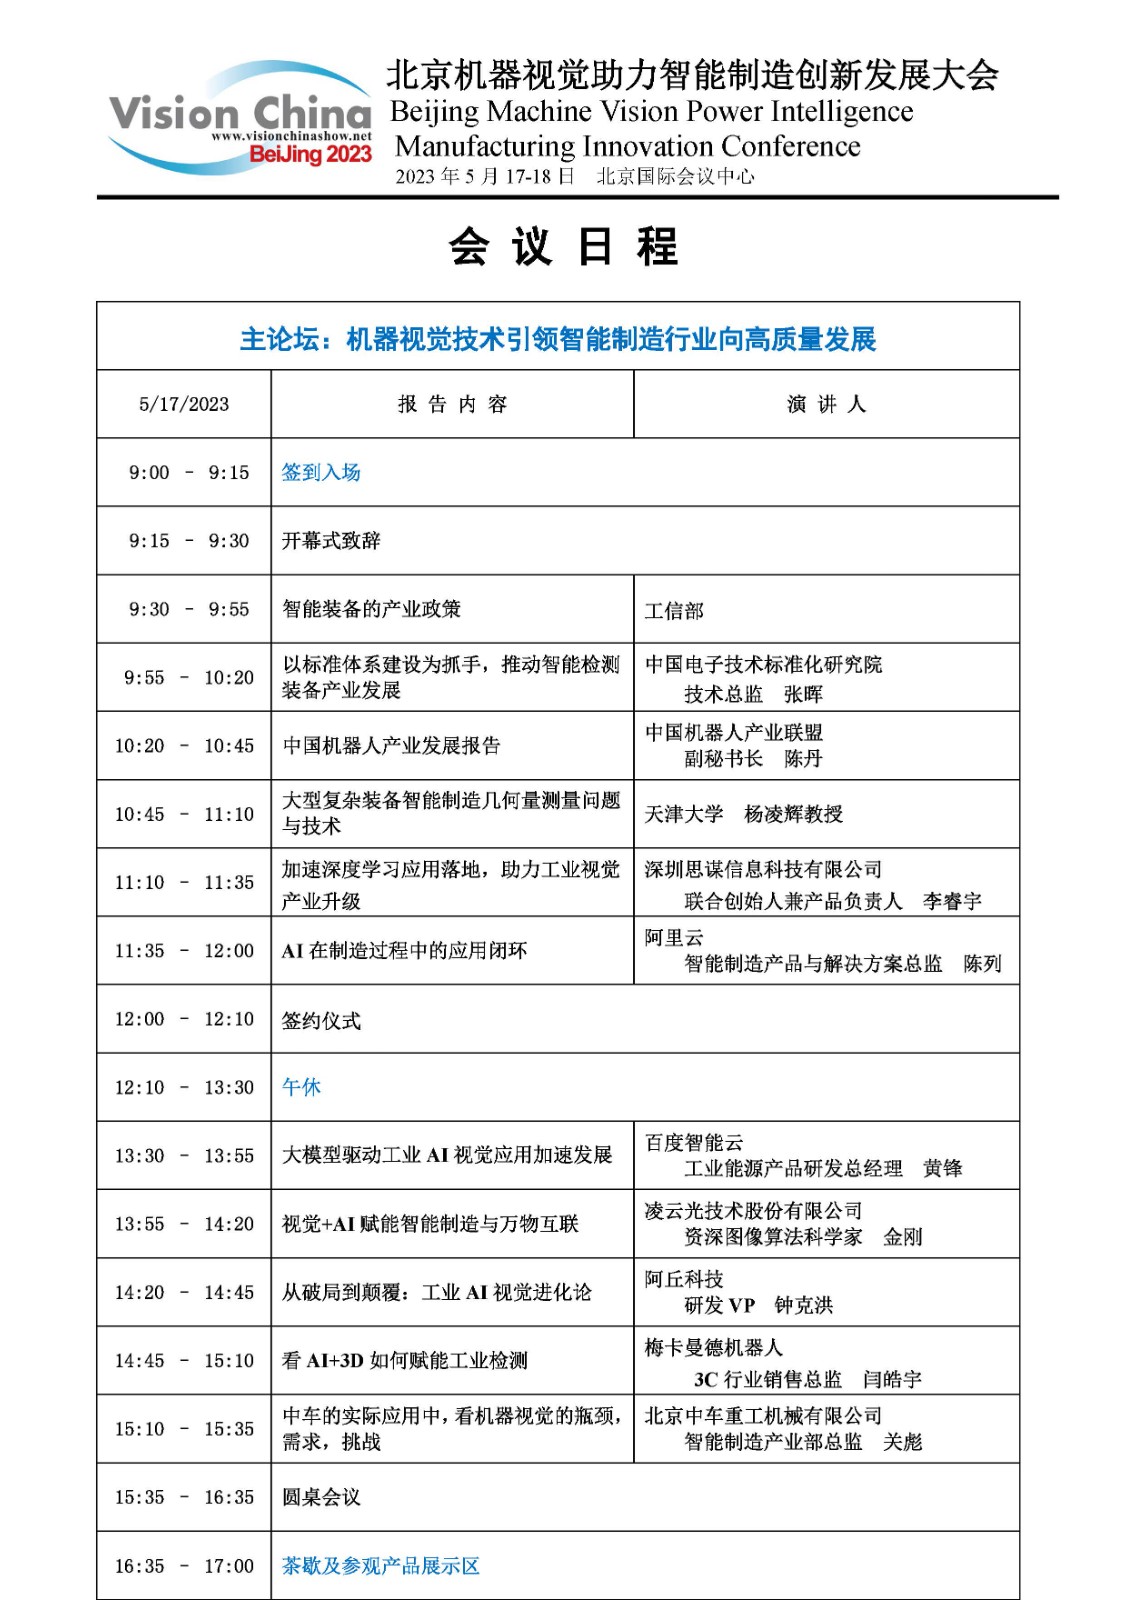 2023年北京机器视觉助力智能制造创新发展大会日程(2)_页面_1.jpg